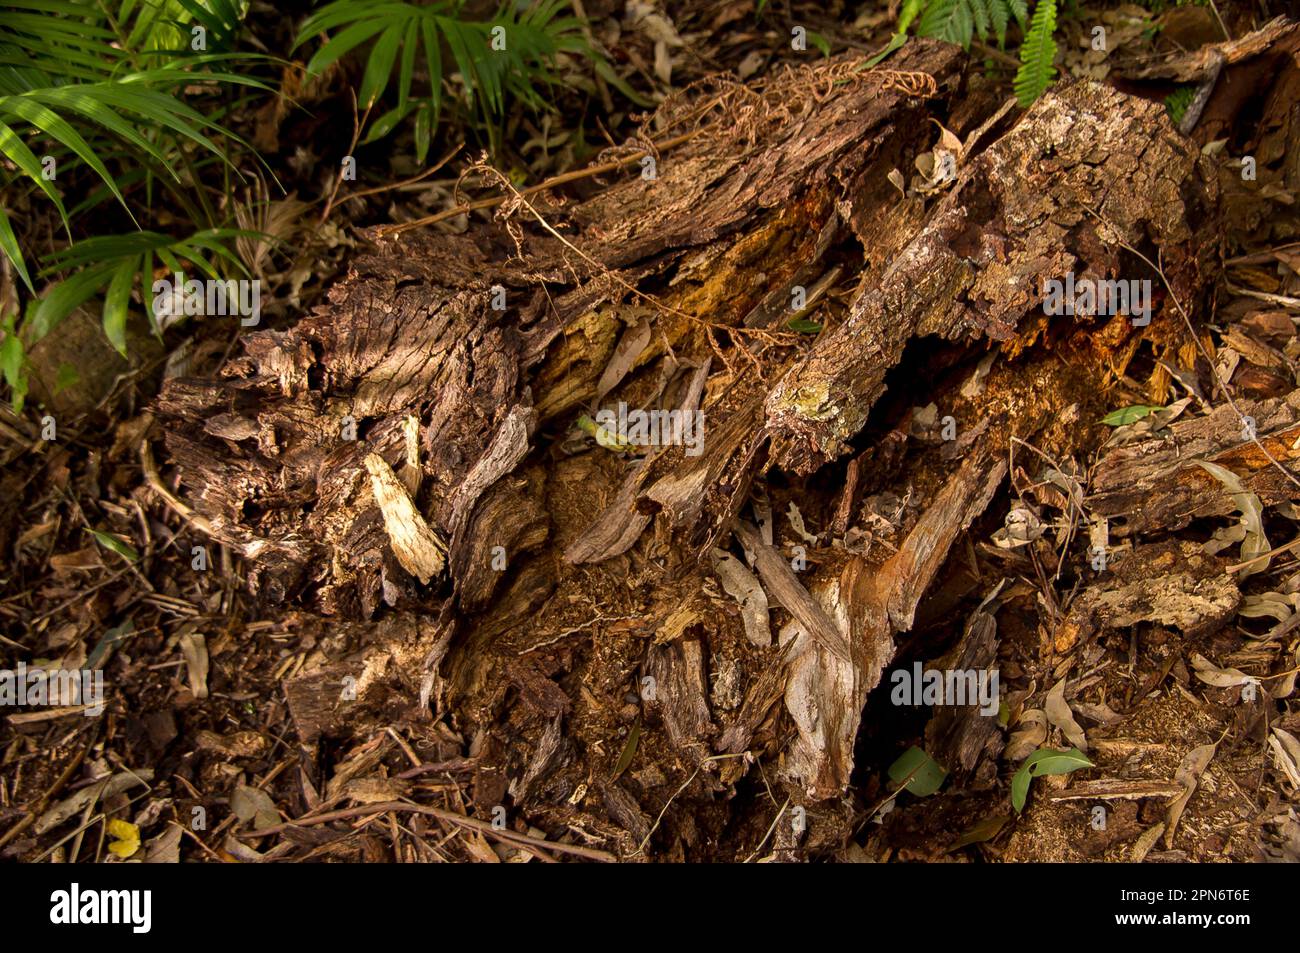 Débris organiques sur le sol de la forêt dans la forêt tropicale des basses terres australiennes dans le Queensland. L'écorce, les feuilles, le bois pourri forment une couche épaisse. Banque D'Images